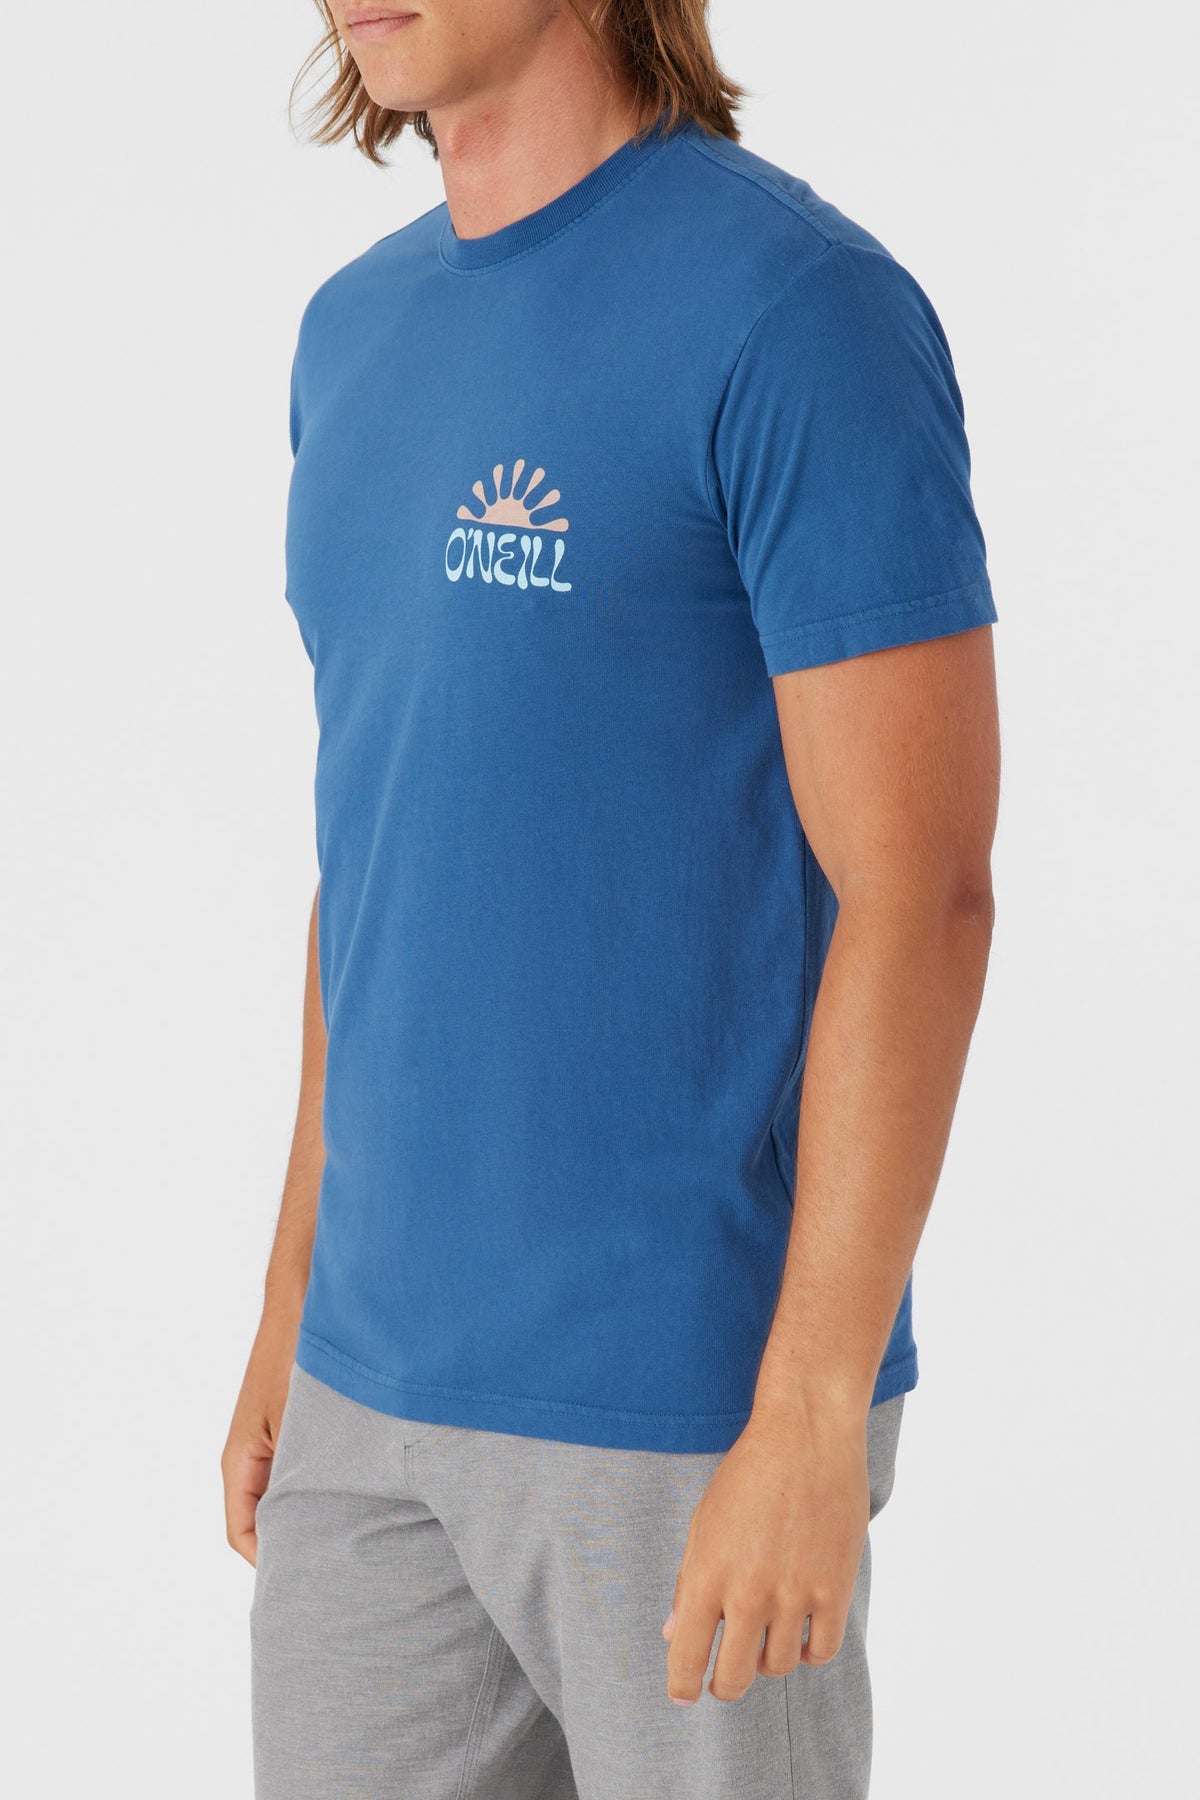 t-shirt-homme-huckleberry-SP4118703C-ONEILL-dm2_shop-06